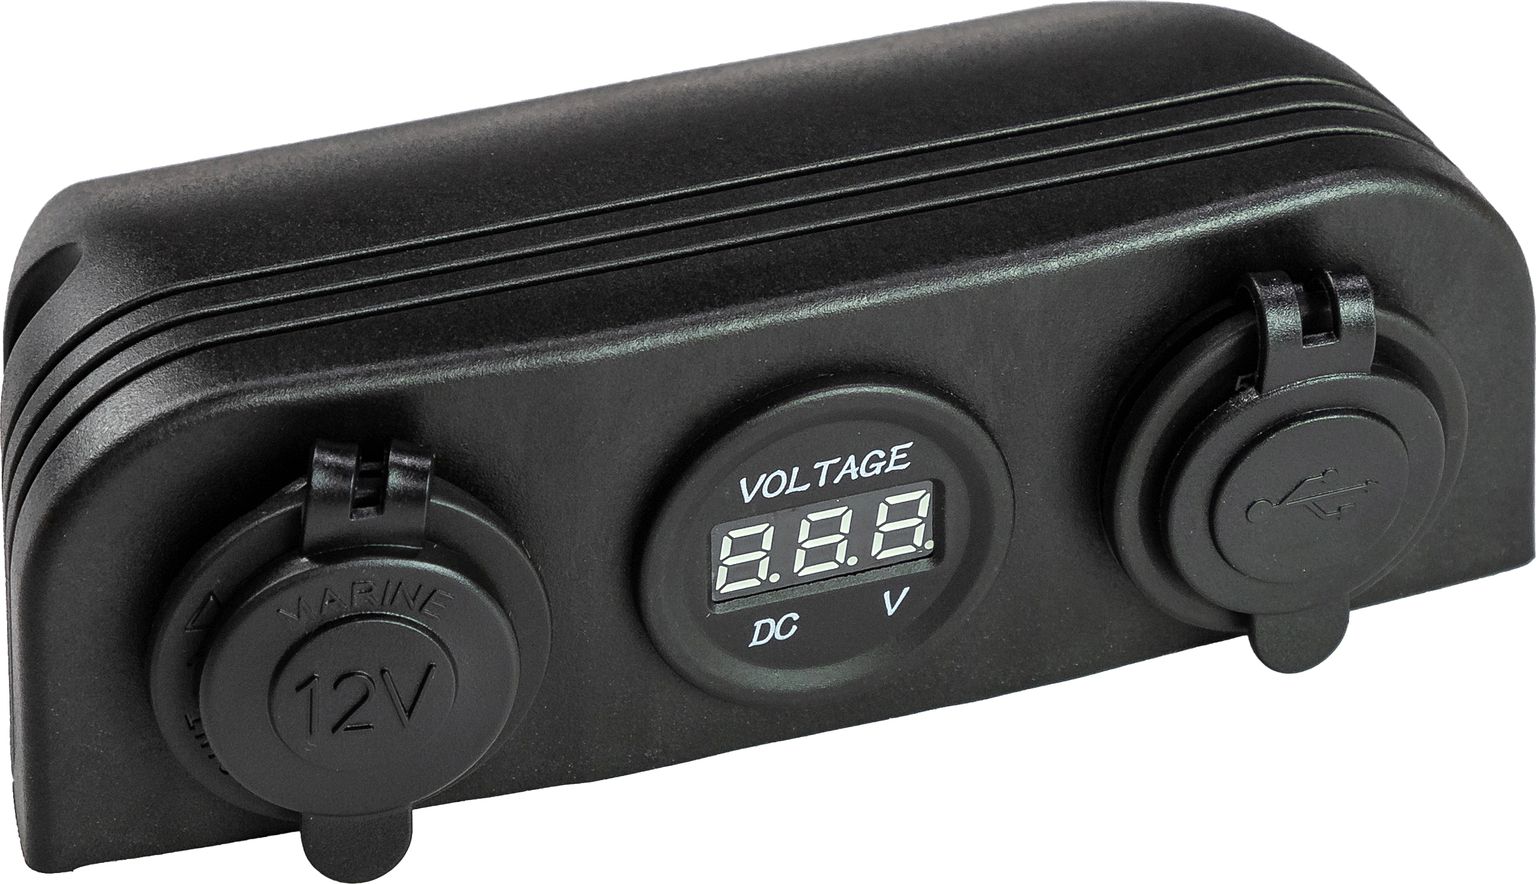 Панель с USB-разъемом 5в 2.1А, прикуривателем и вольтметром AD9-1011/2013/4010